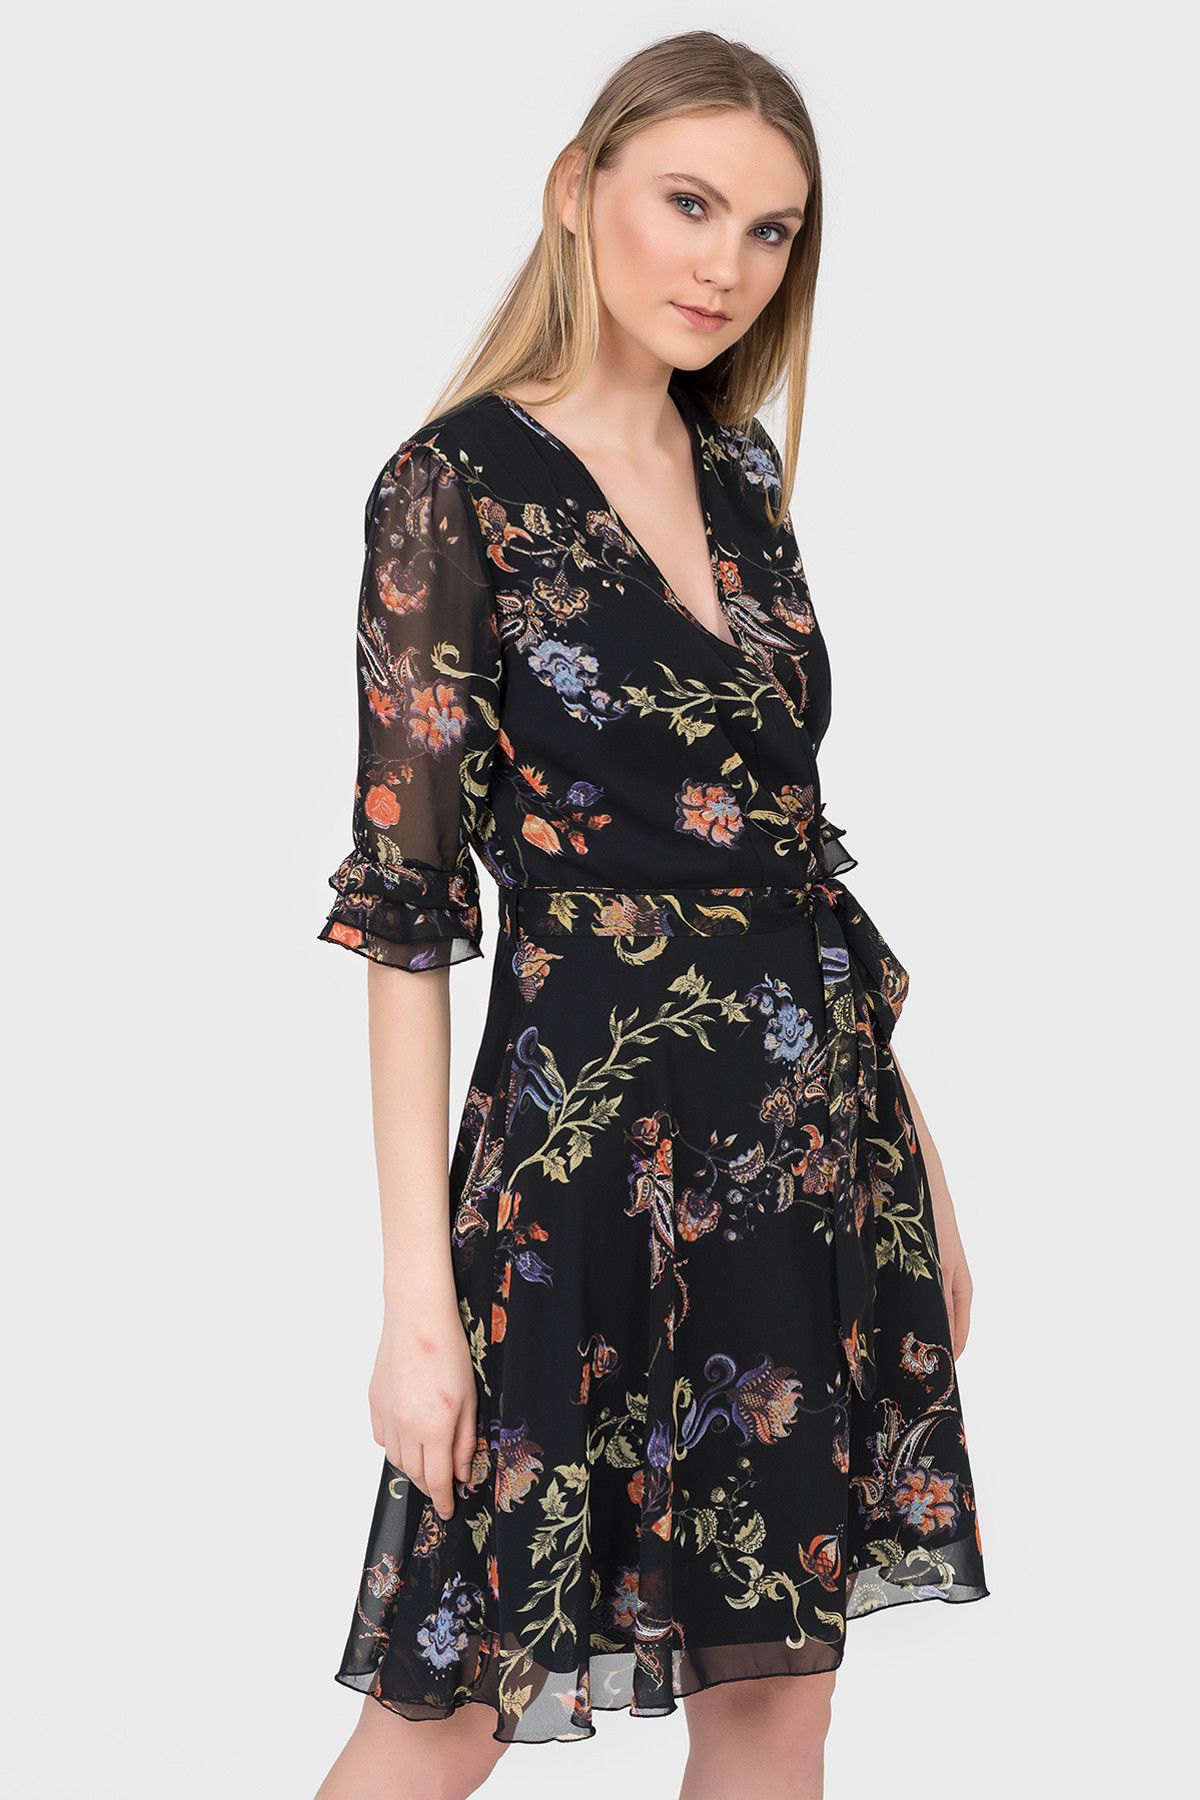 İroni Kadın Siyah İspanyol Kol Çiçekli Şifon Elbise 5042-1232